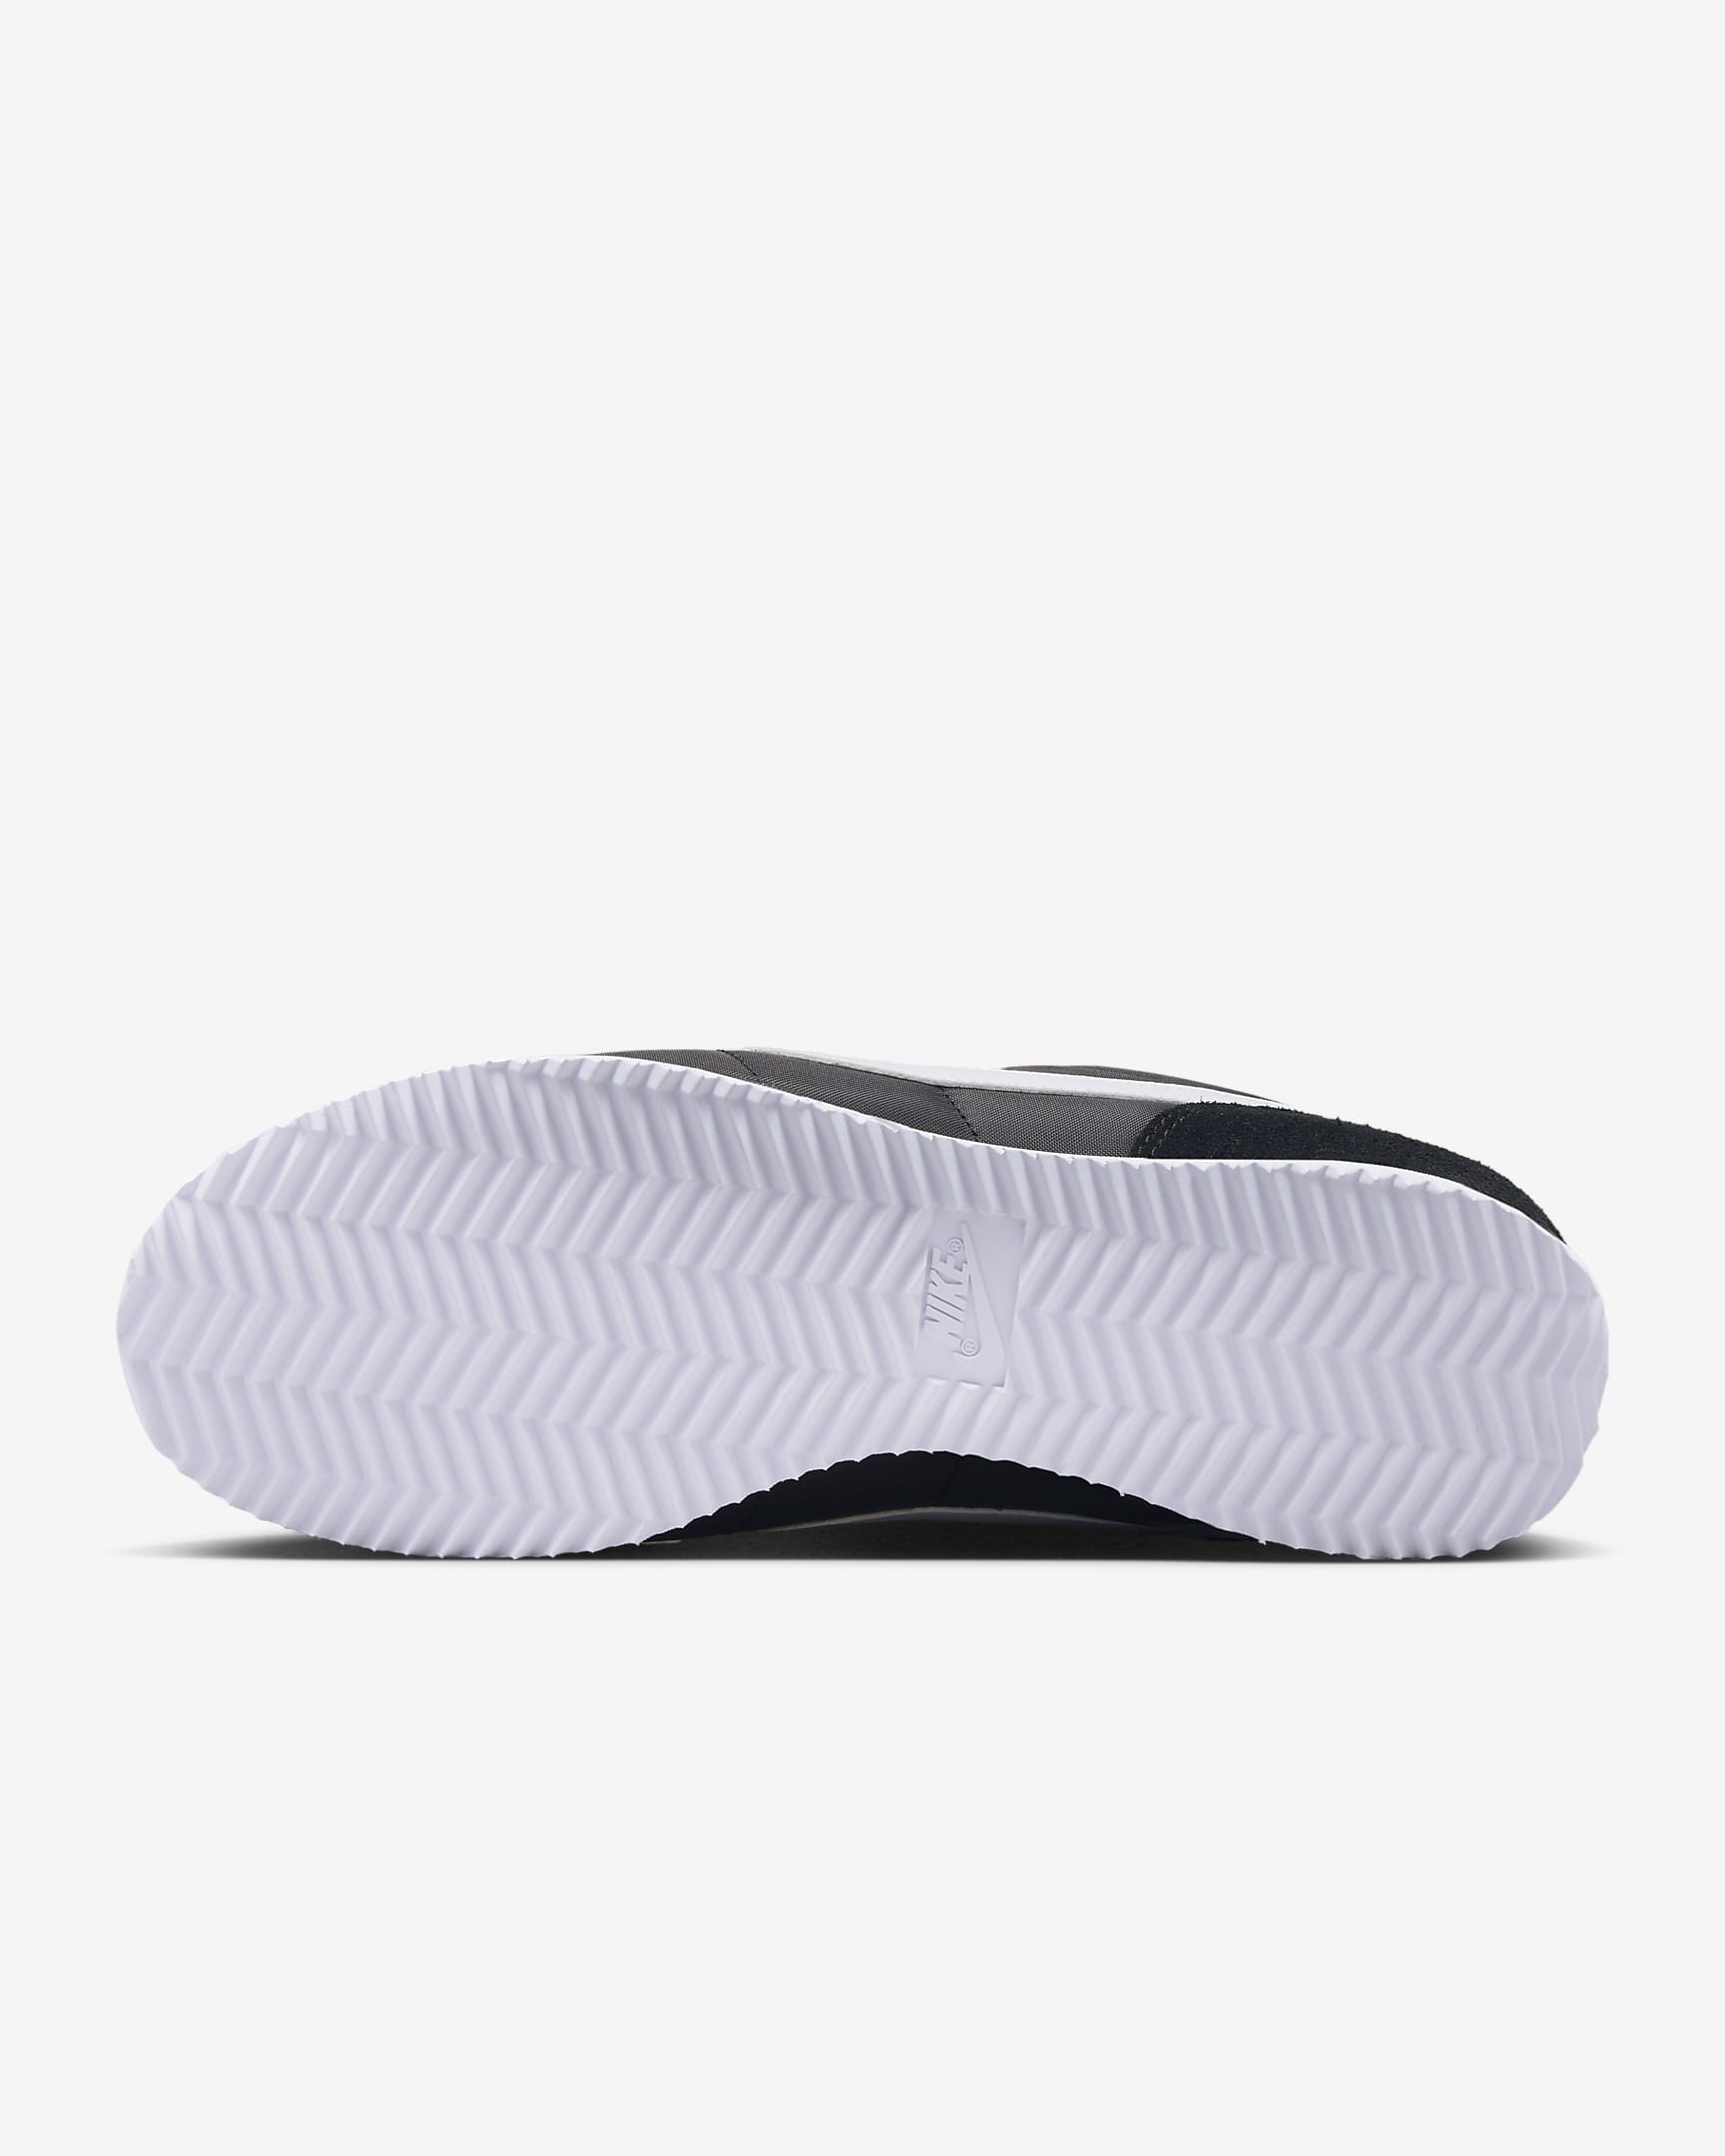 Chaussure Nike Cortez Textile pour femme - Noir/Blanc